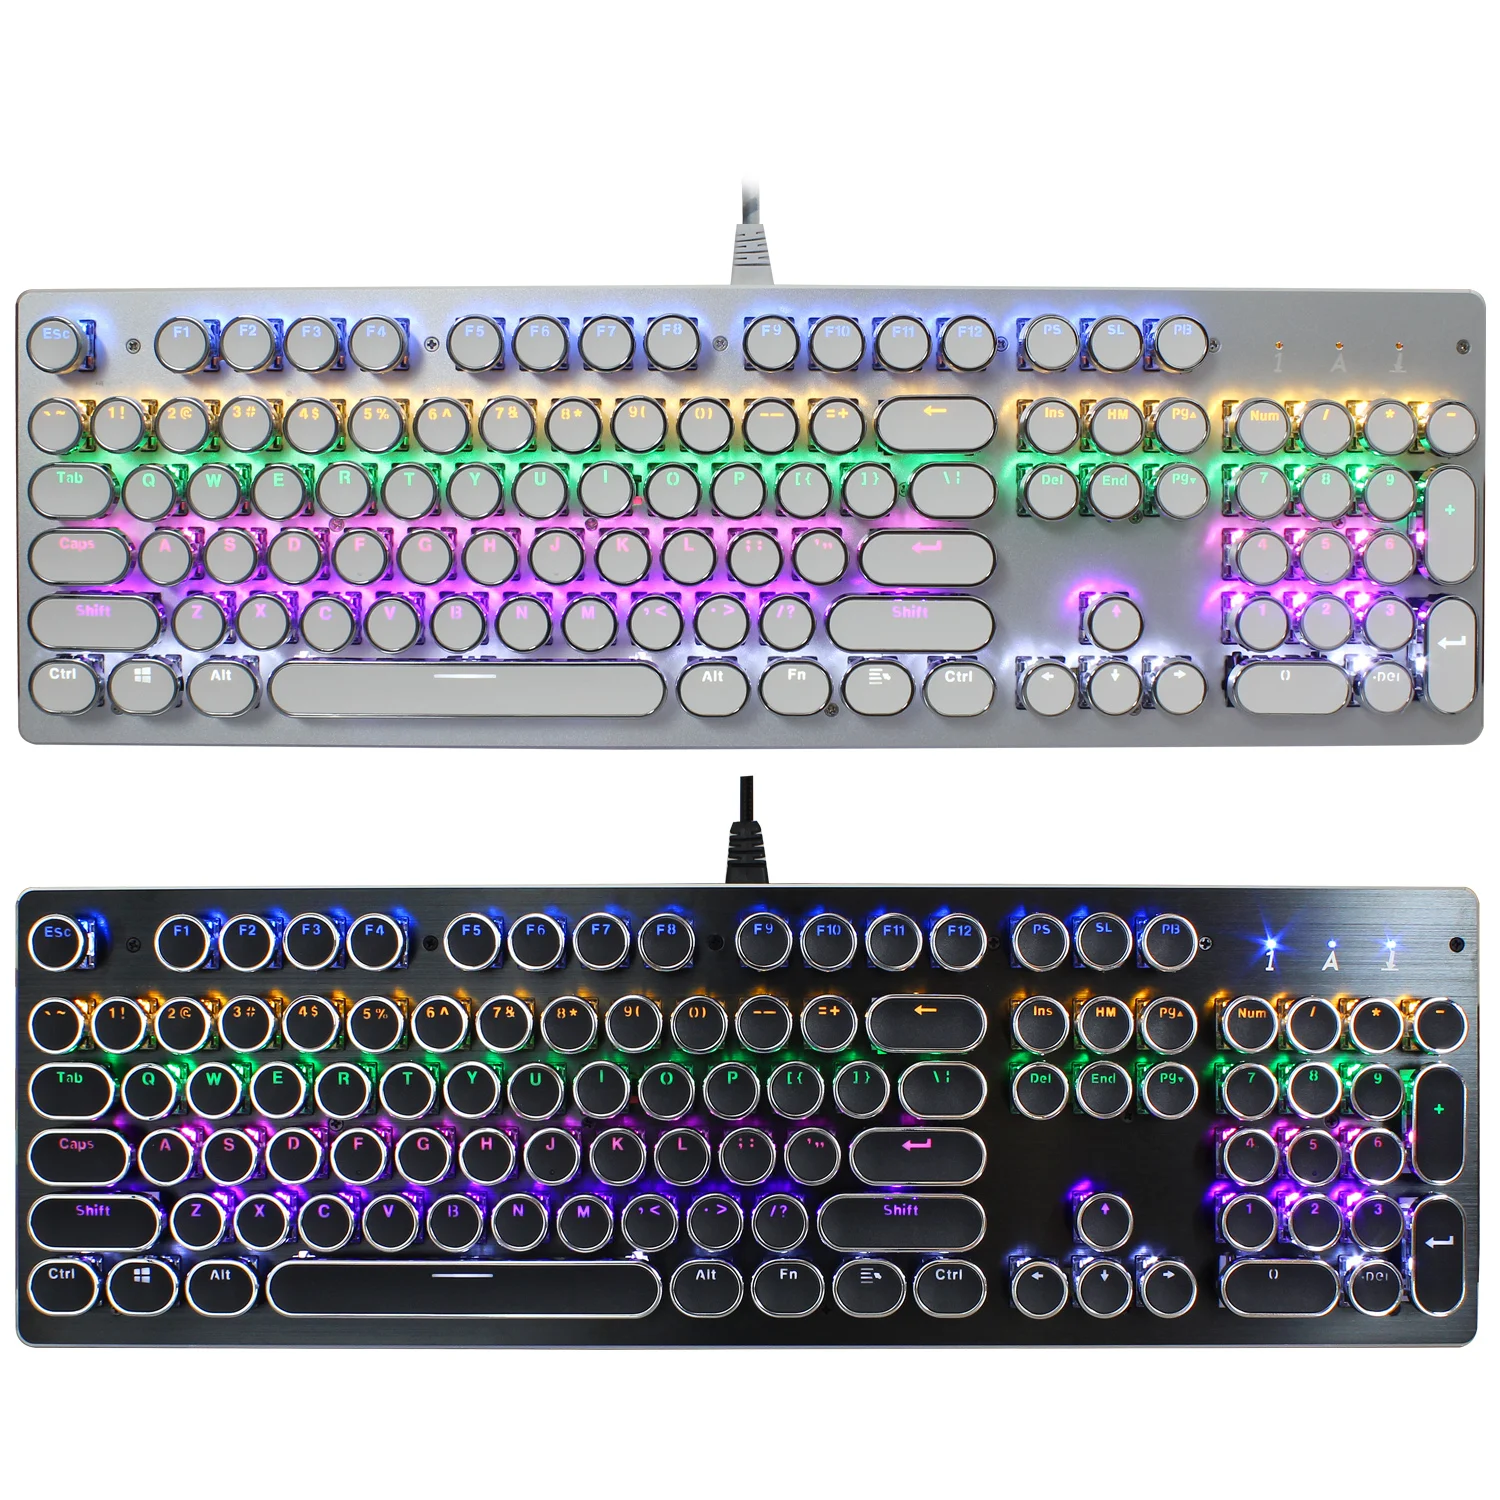 Проводная игровая механическая клавиатура, 104 клавиш, Ретро панк покрытие, круглые клавиши, игровые клавиатуры, USB подсветка для планшета, настольного компьютера